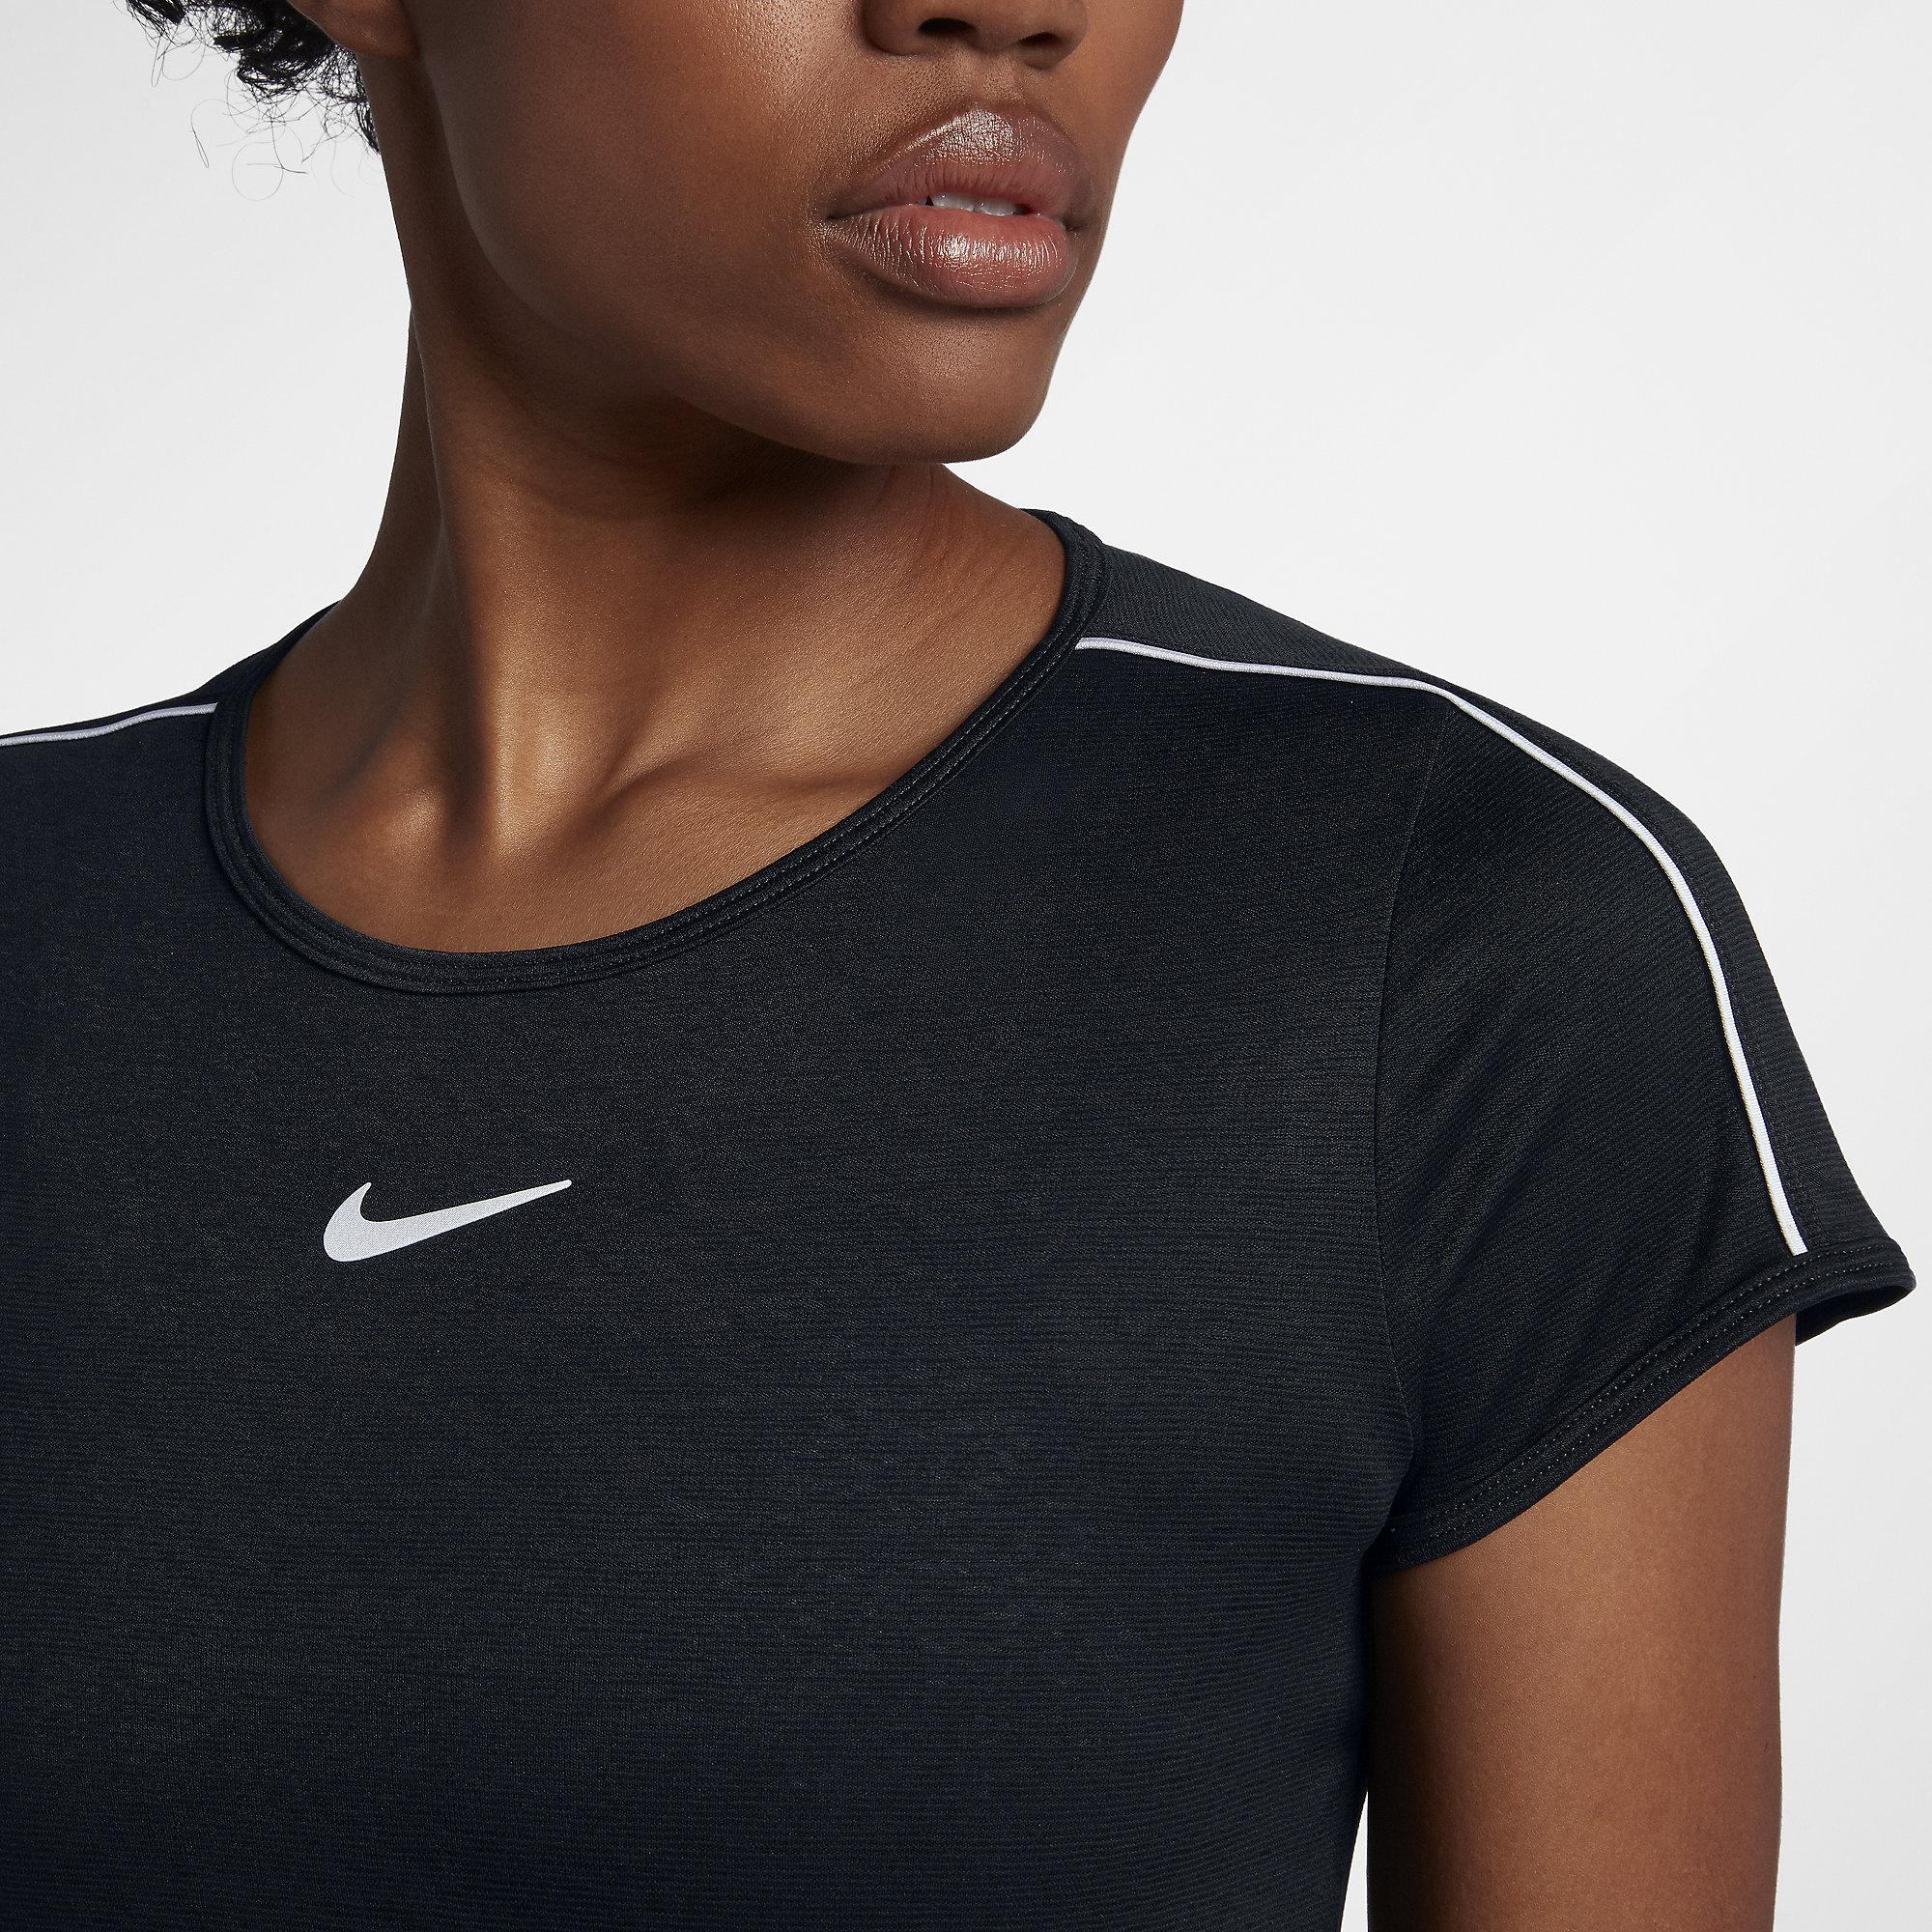 Nike Womens Dry Tennis Top - Black/White - Tennisnuts.com